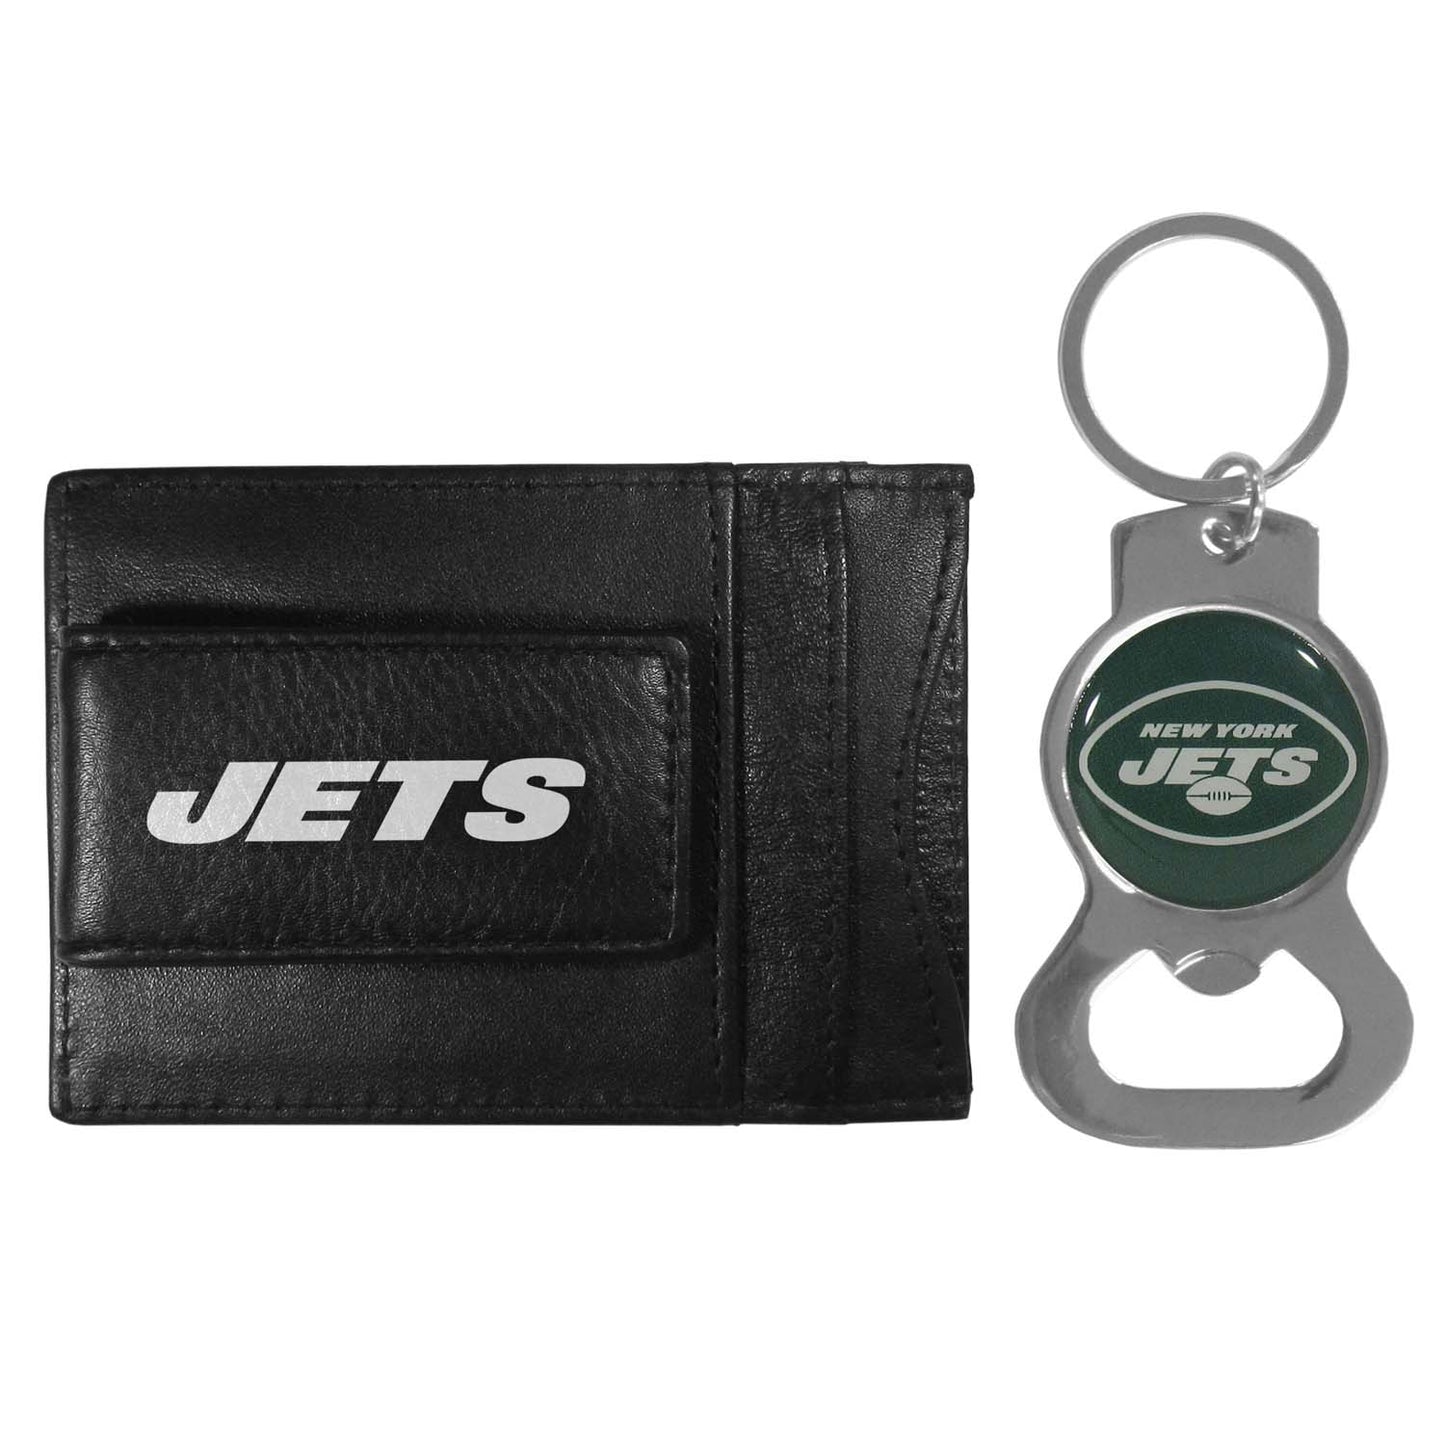 New York Jets NFL Bottle Opener Keychain Bundle - Black